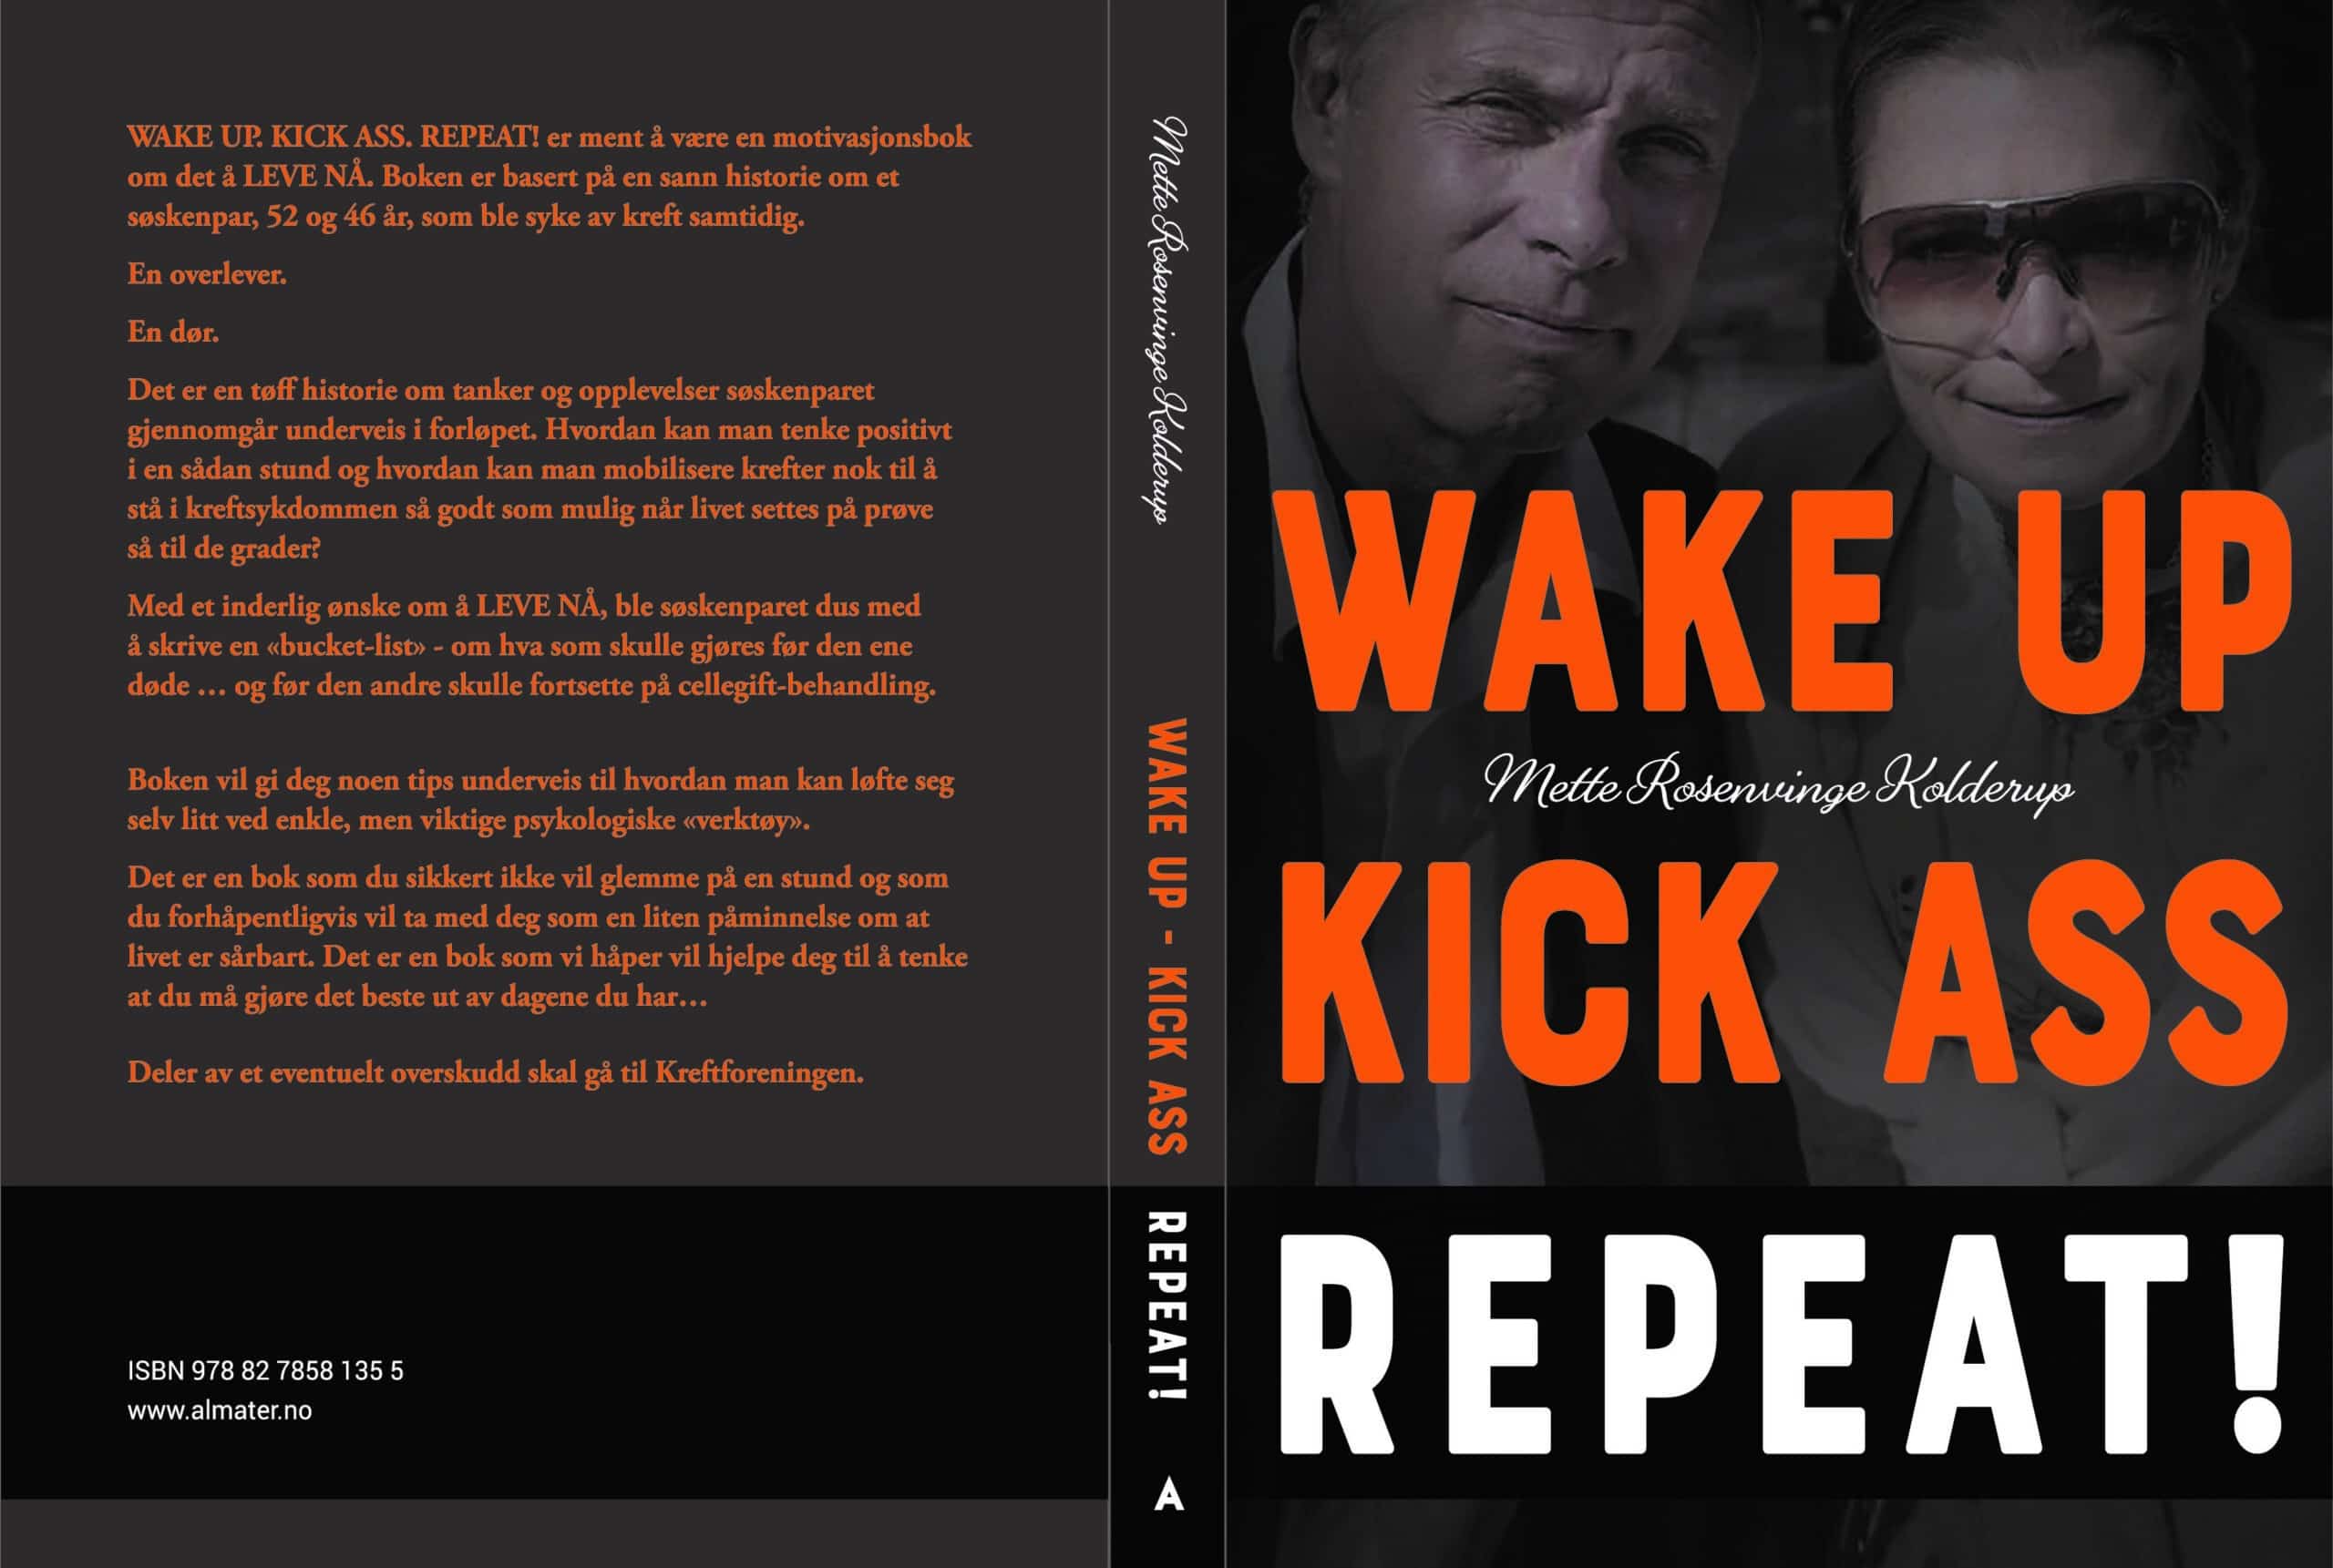 et bokomslag for boken wake up kick ass repeat